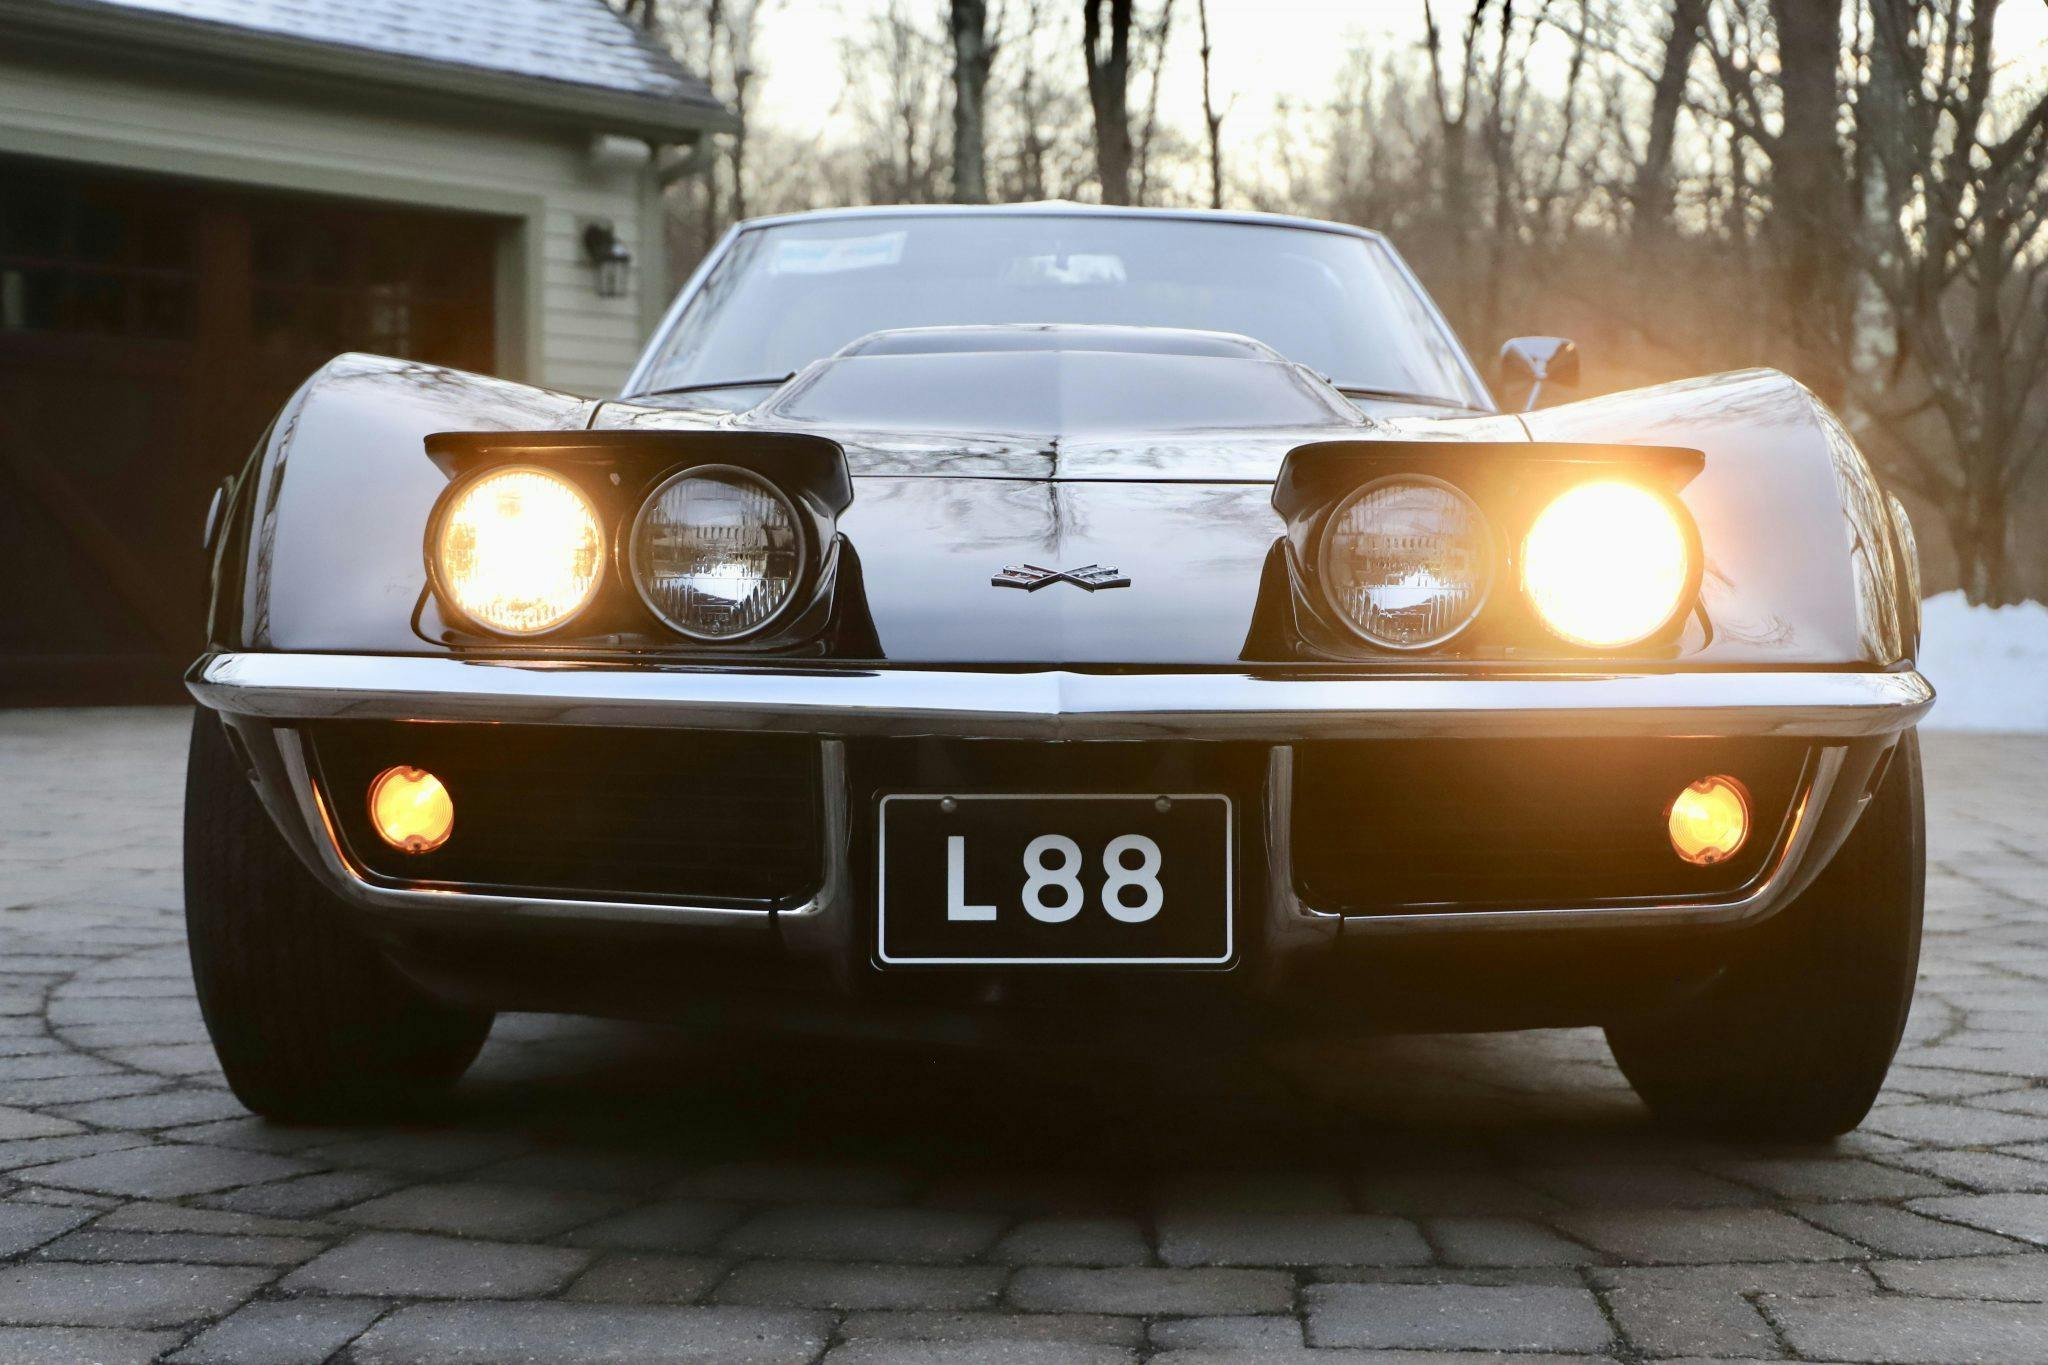 1969 Chevrolet Corvette L88 coupe Tuxedo Black front lights pop up